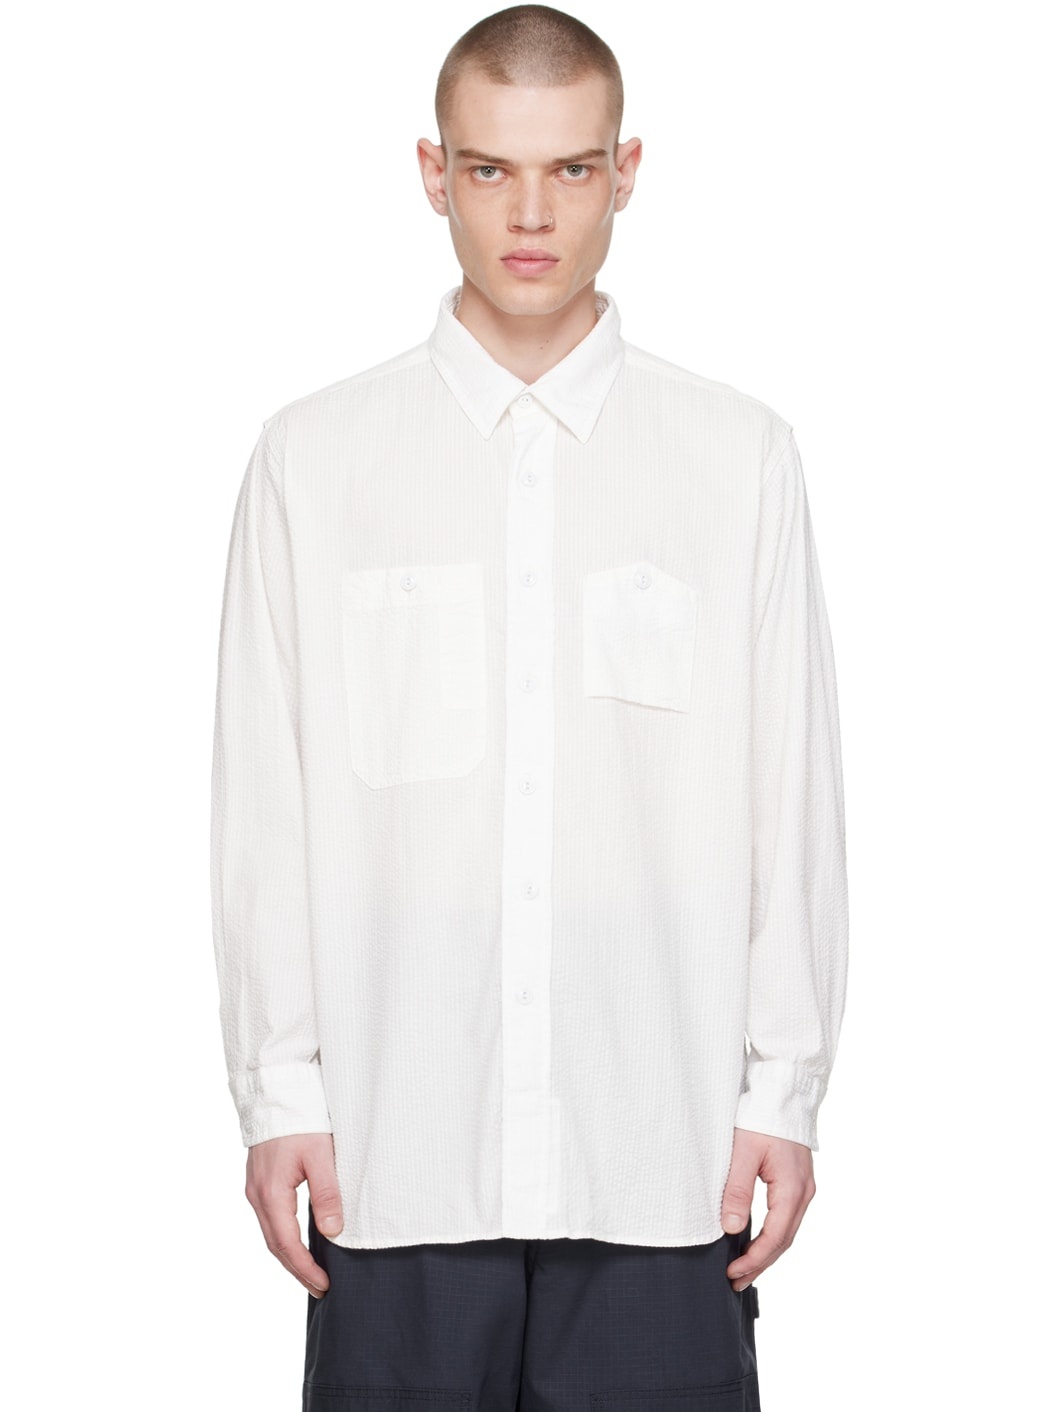 White Work Shirt - 1